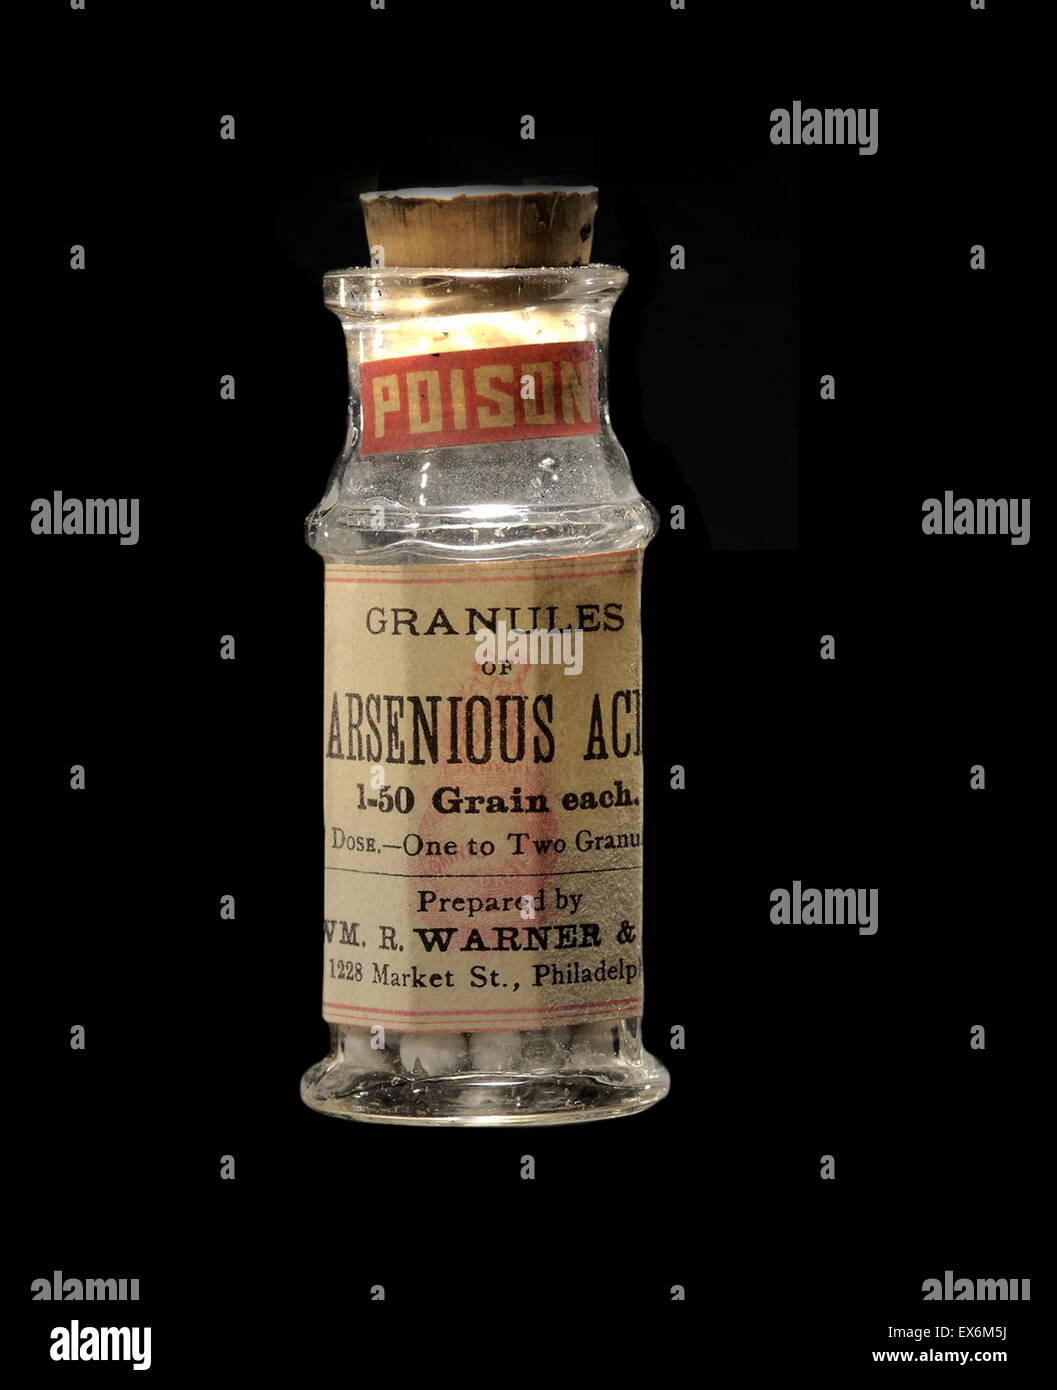 La médecine basée sur l'arsenic, Wm. R. Warner & Co., vers 1900 Banque D'Images